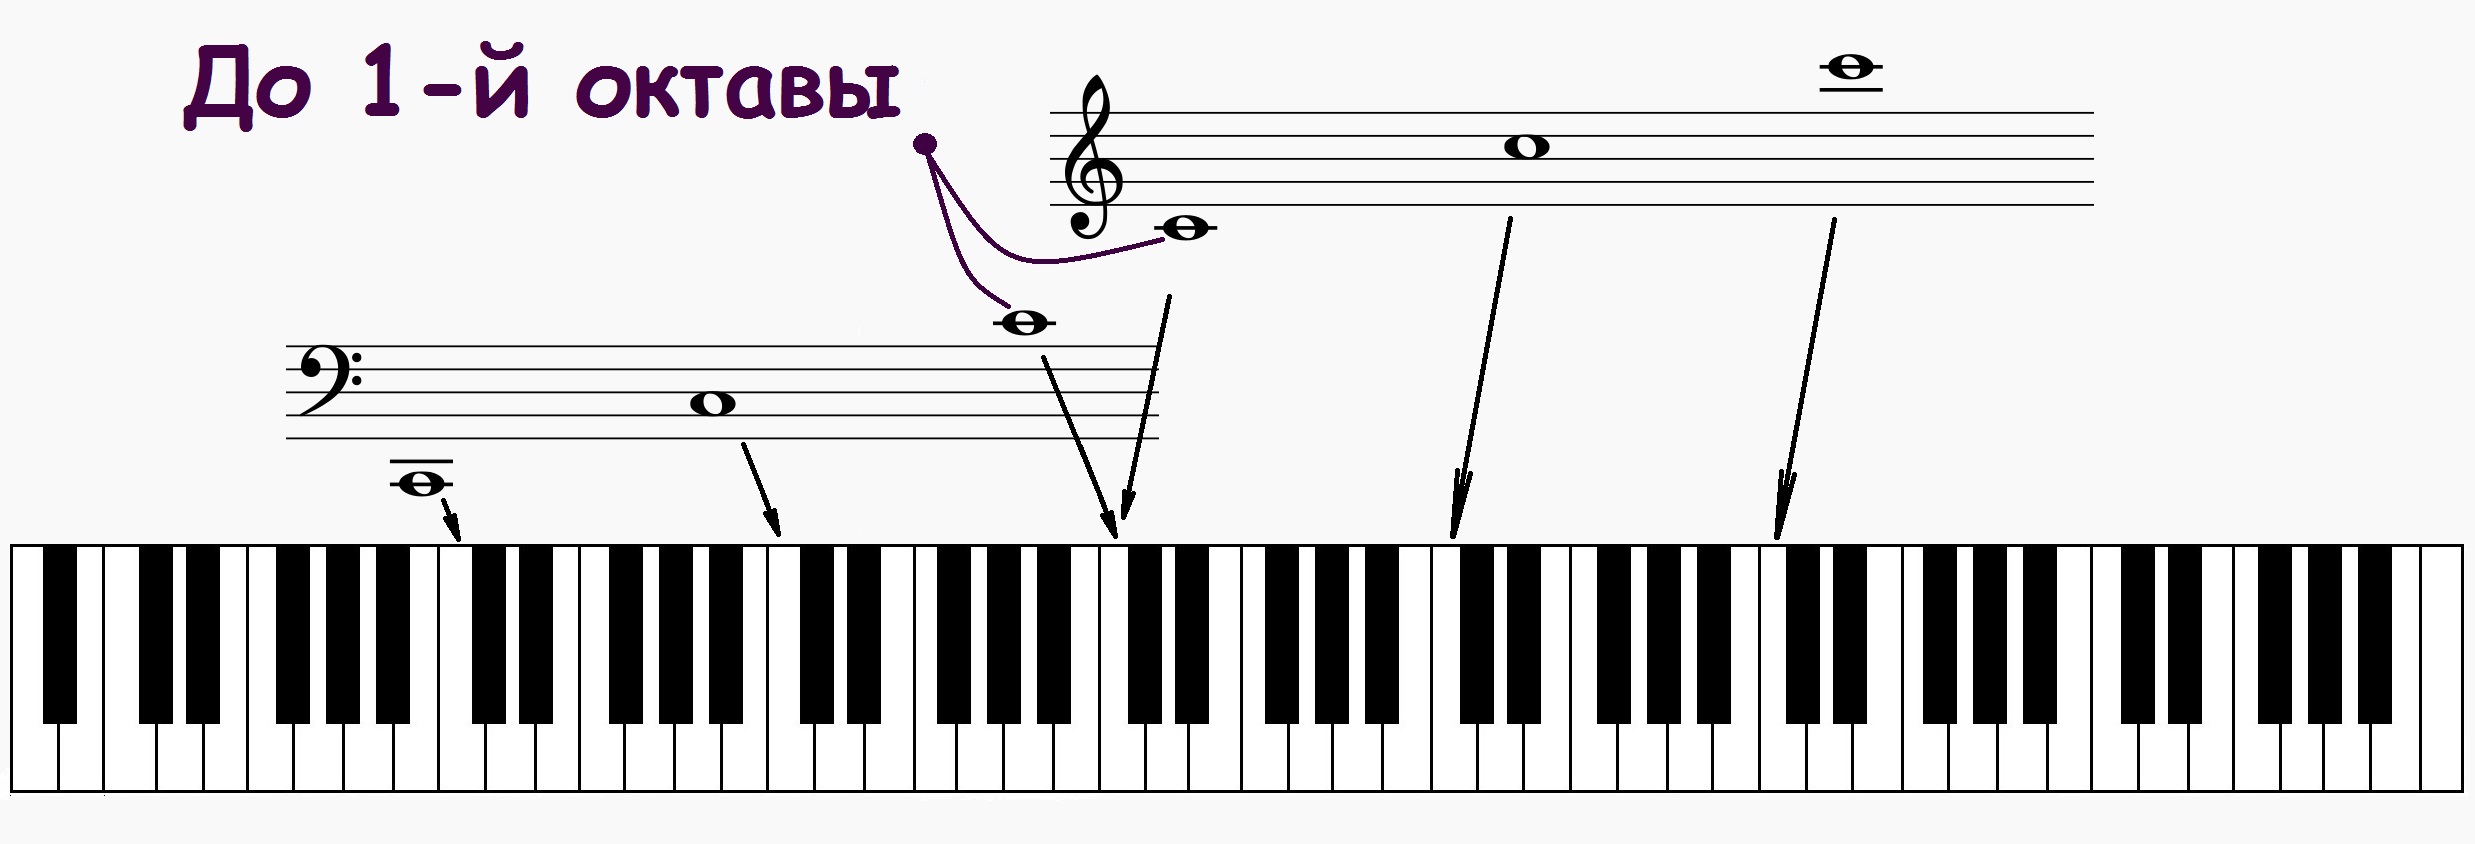 Басовый ключ пианино. Басовый ключ расположение нот на фортепиано. Басовый ключ большая Октава. Схема синтезатора 1 Октава. Ре малой октавы в басовом Ключе.